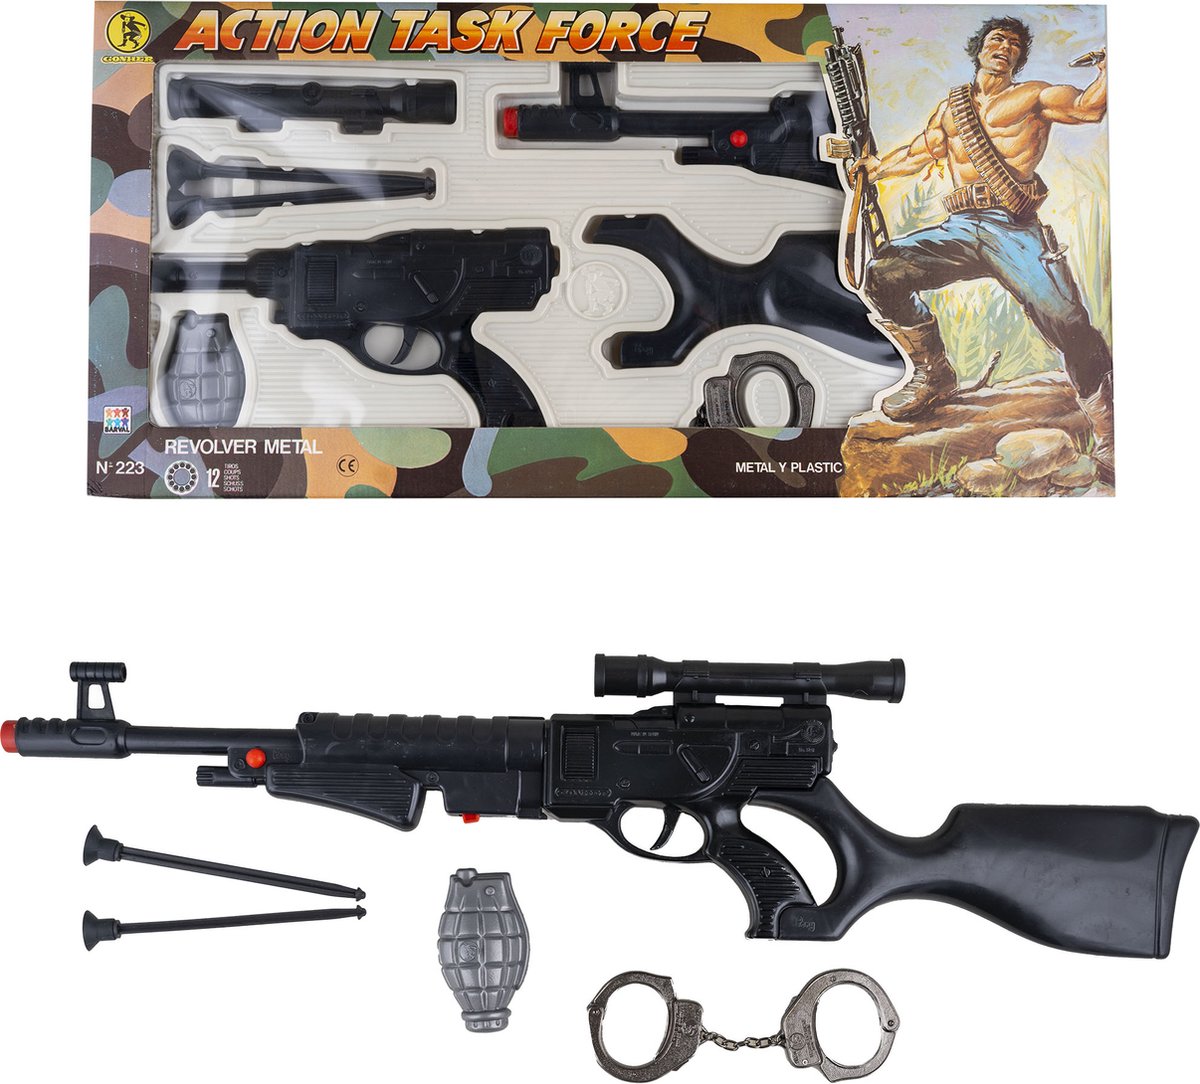 Action task force geweer / revolver metaal - 12 shot - GONHER - 8-delig |  bol.com